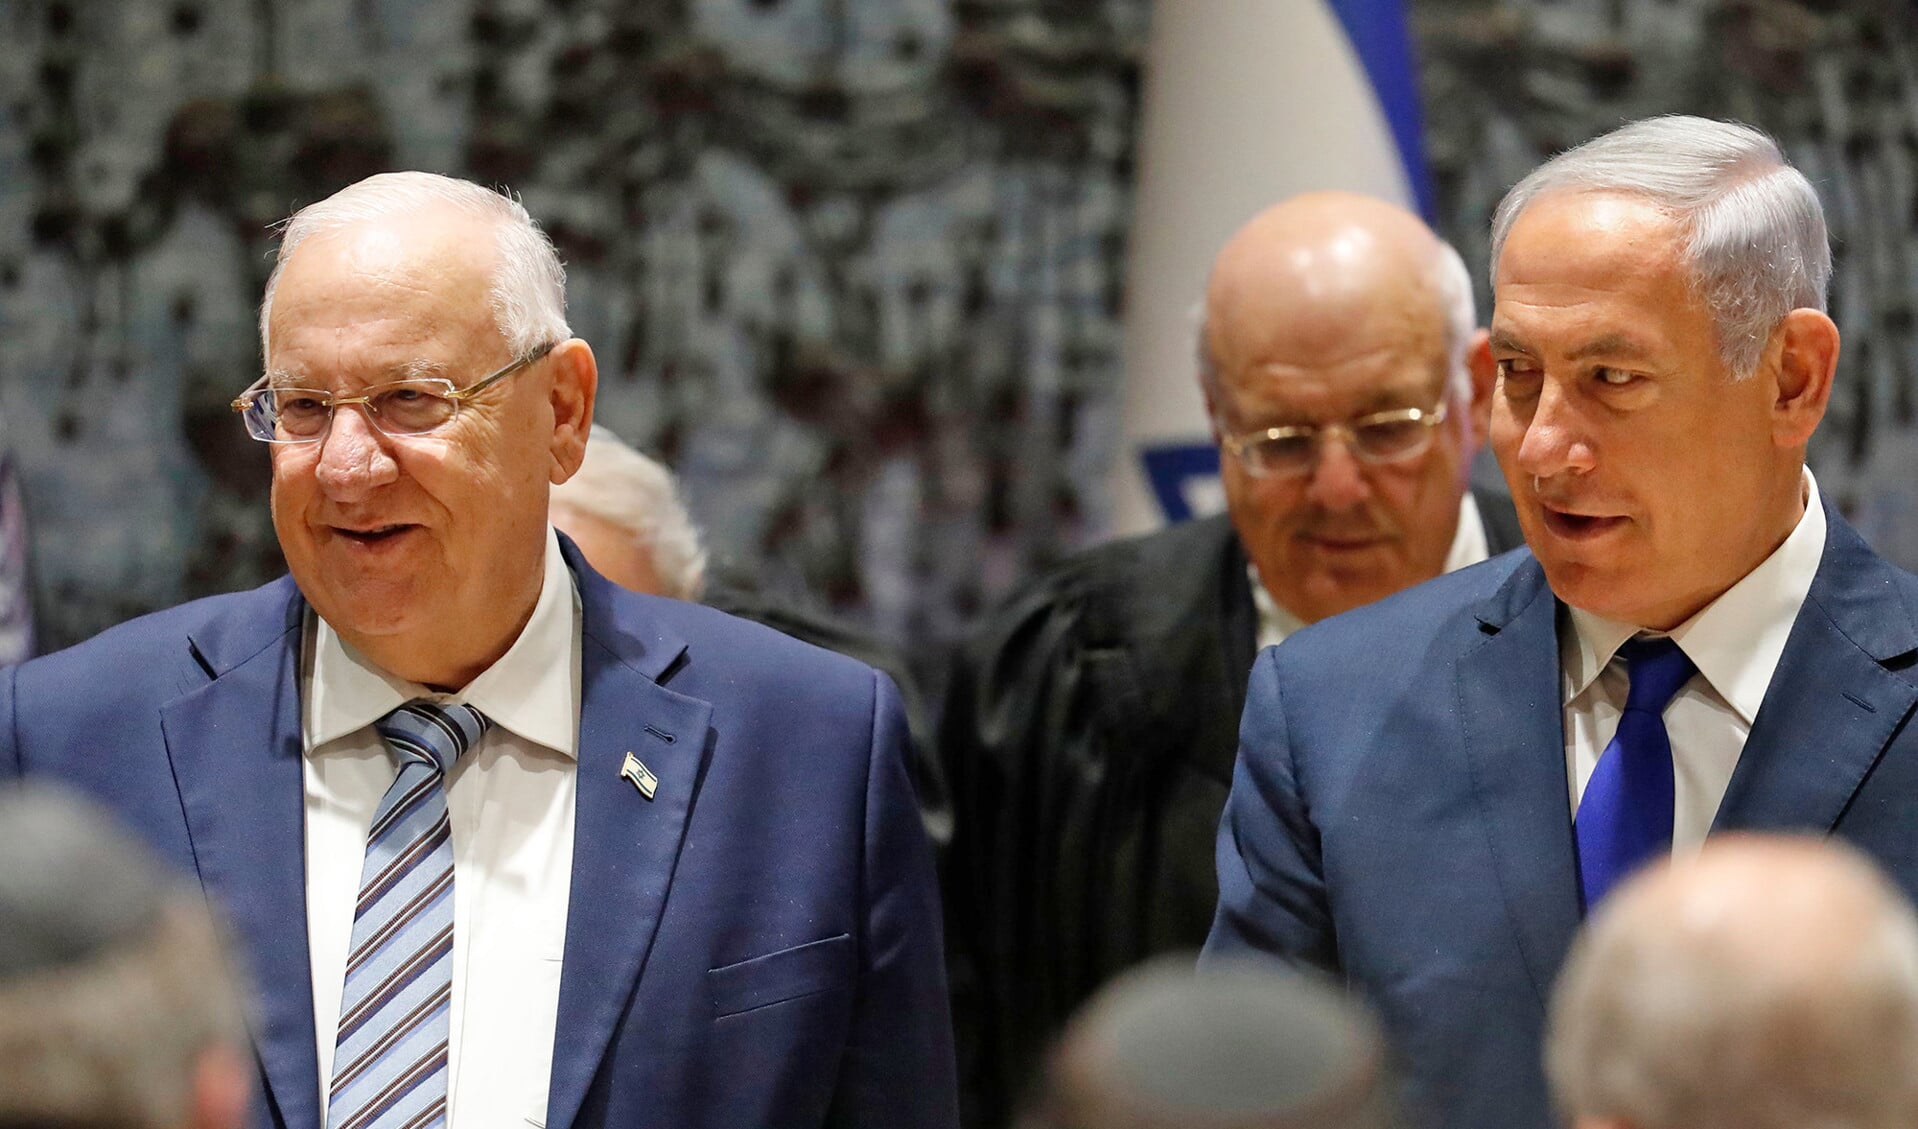 Premier Benjamin Netanyahu (rechts) hoort binnenkort van openbaar aanklager Avidhai Mandelblit of hij in staat van beschuldiging wordt gesteld wegens corruptie in drie afzonderlijke zaken. Reuven Rivlin staat links op de foto.